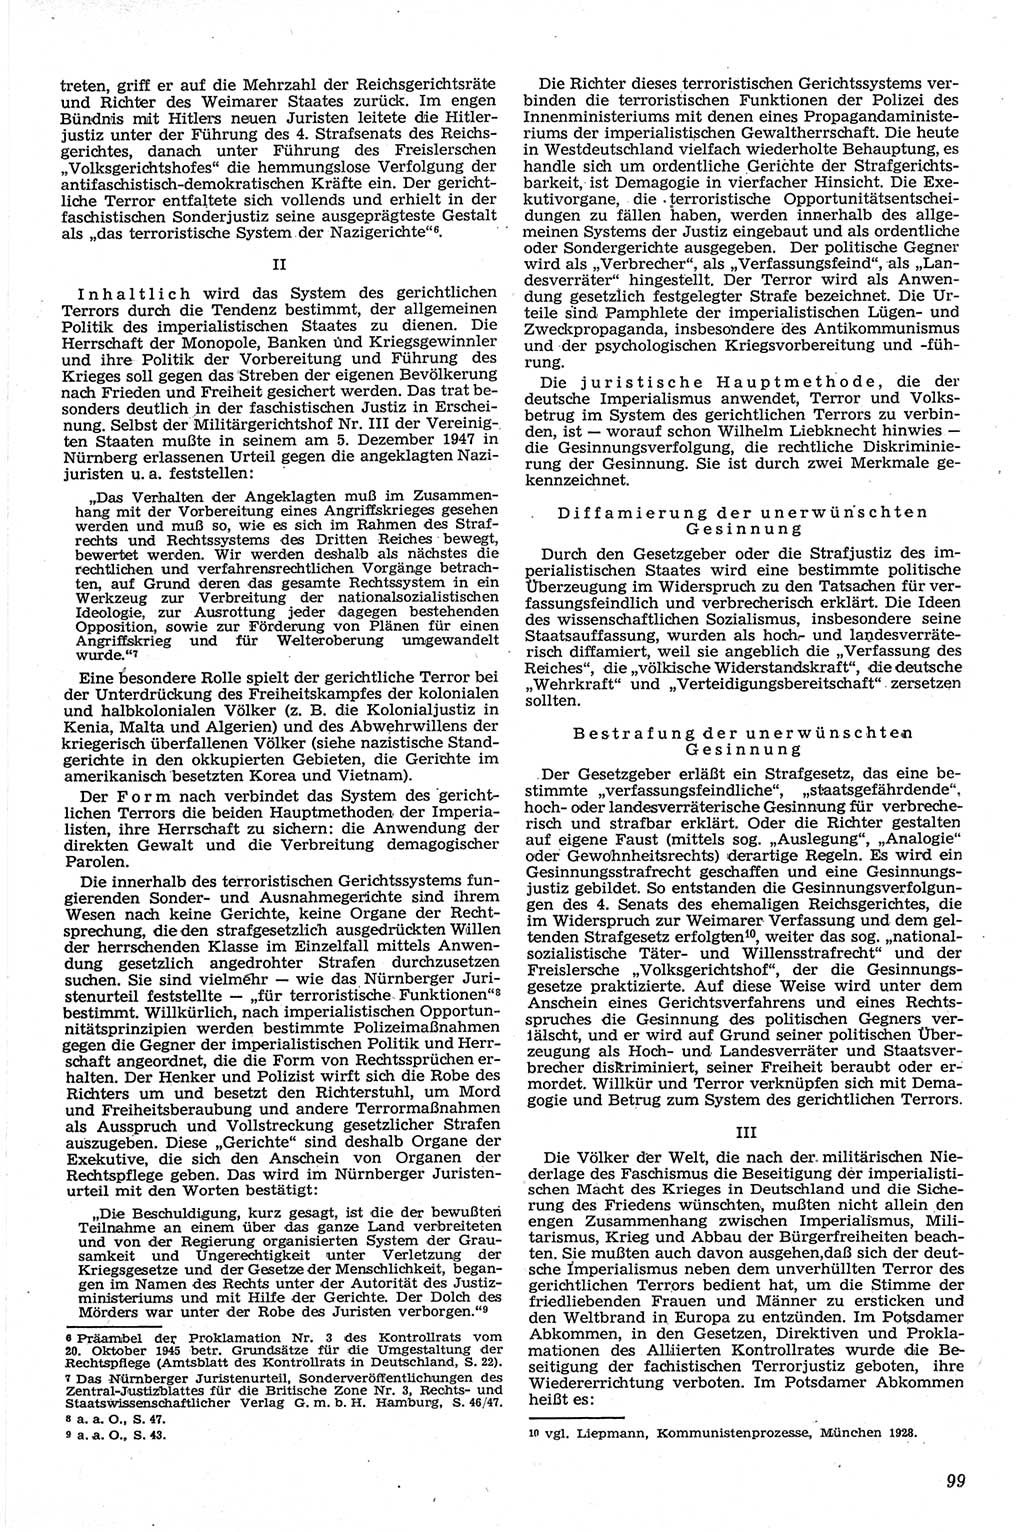 Neue Justiz (NJ), Zeitschrift für Recht und Rechtswissenschaft [Deutsche Demokratische Republik (DDR)], 13. Jahrgang 1959, Seite 99 (NJ DDR 1959, S. 99)